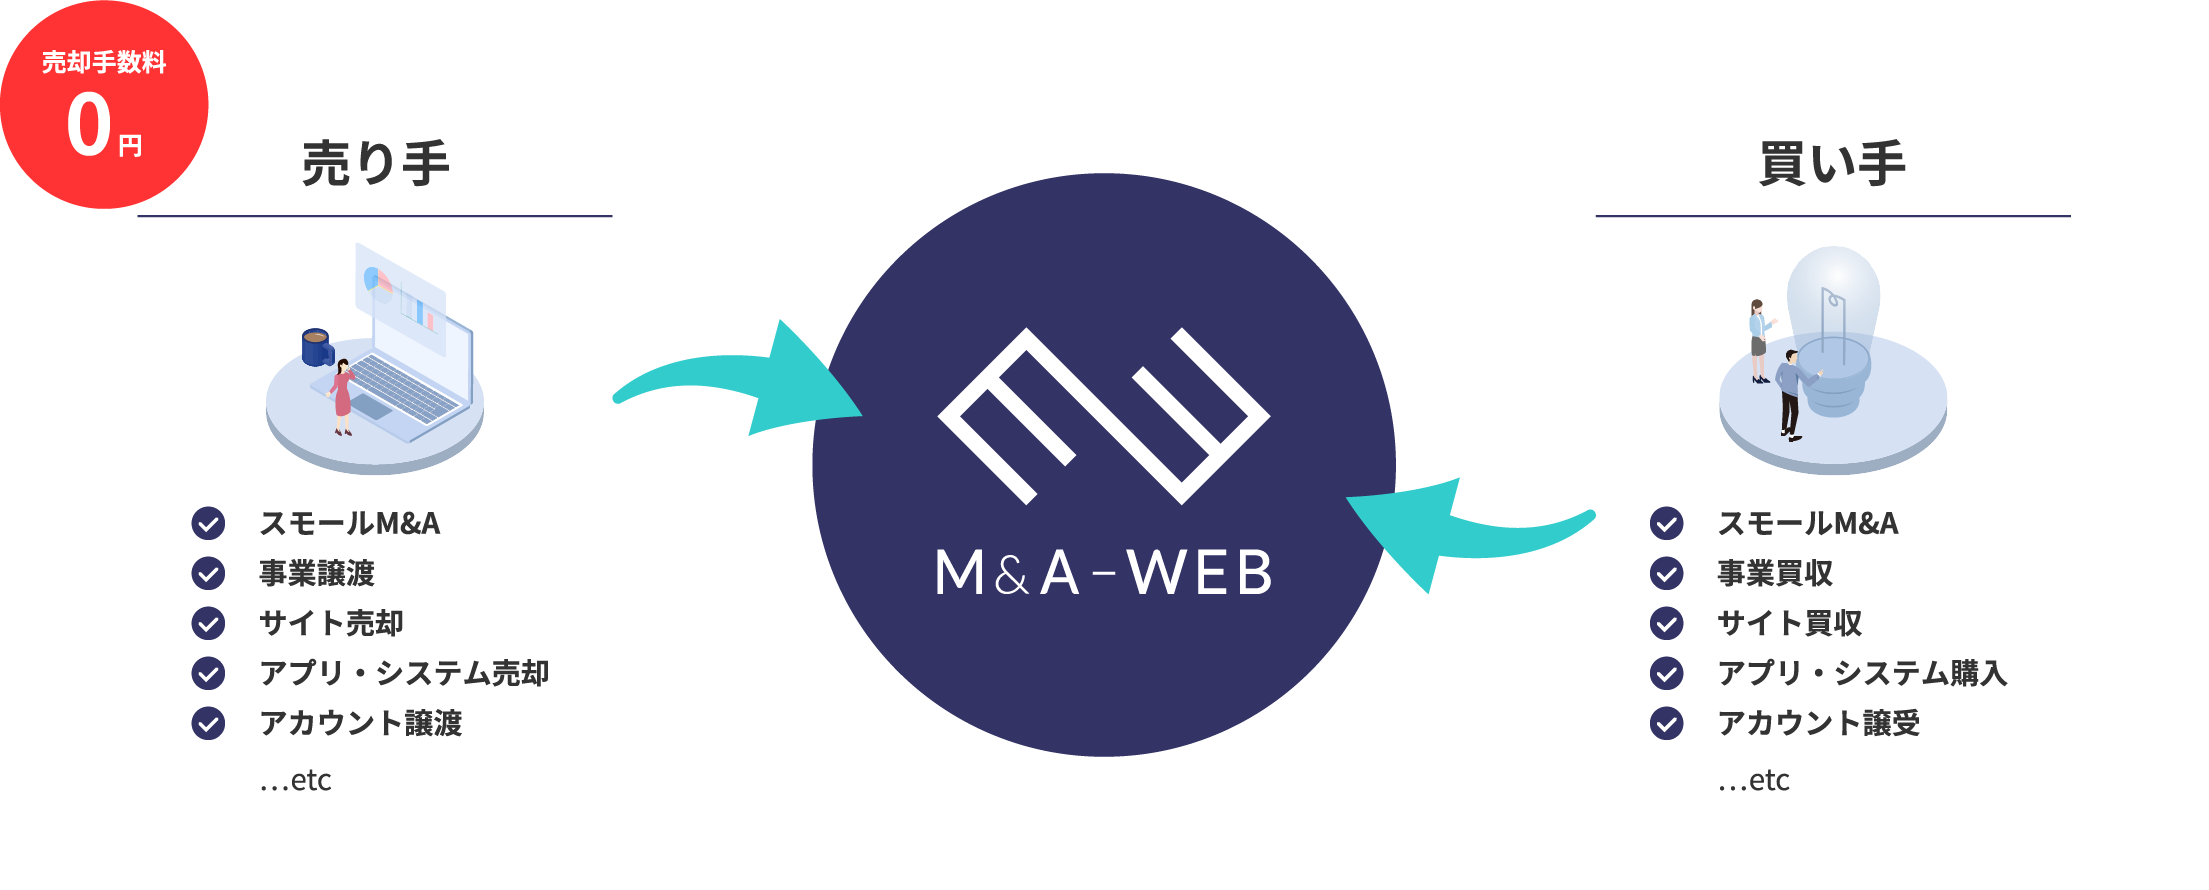 M&A-WEBの仕組み